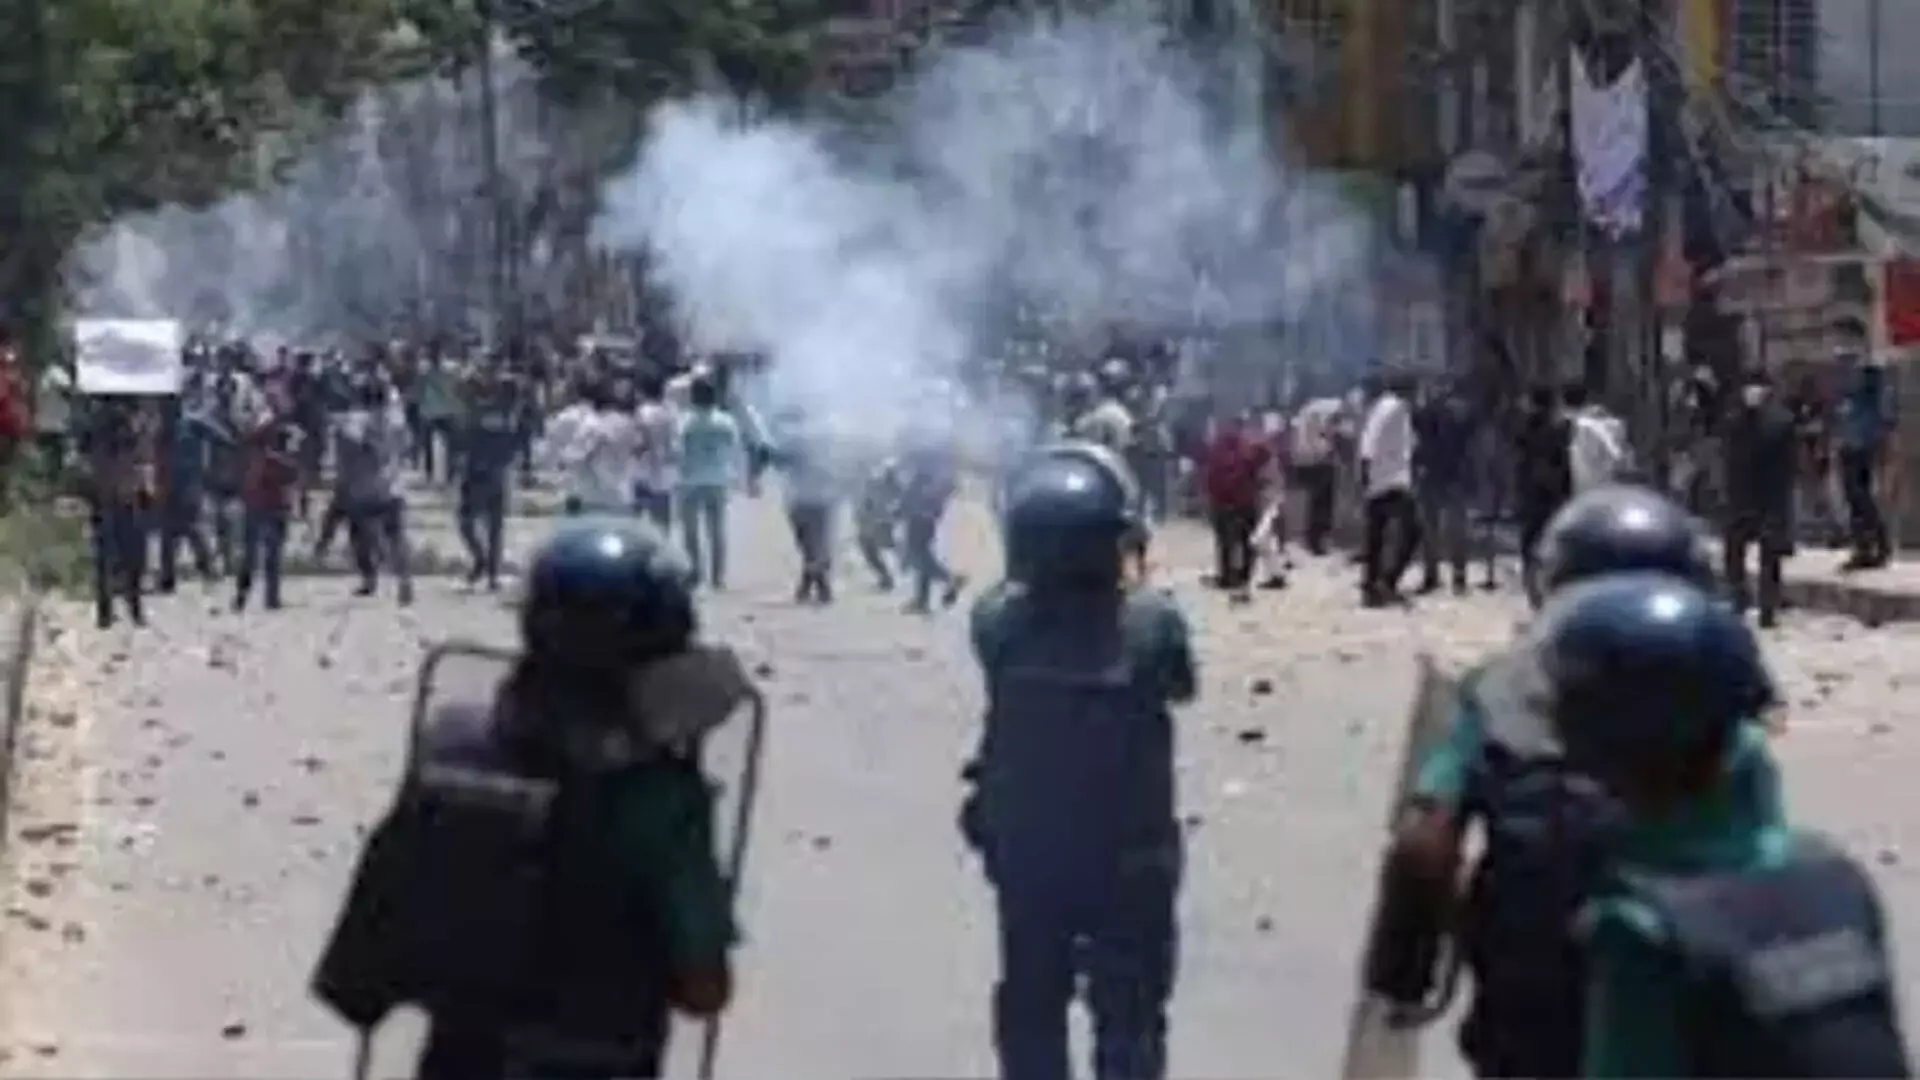 विरोध प्रदर्शन बढ़ने पर Bangladesh सुरक्षा बलों ने गोलियां चलाईं और हथगोले दागे